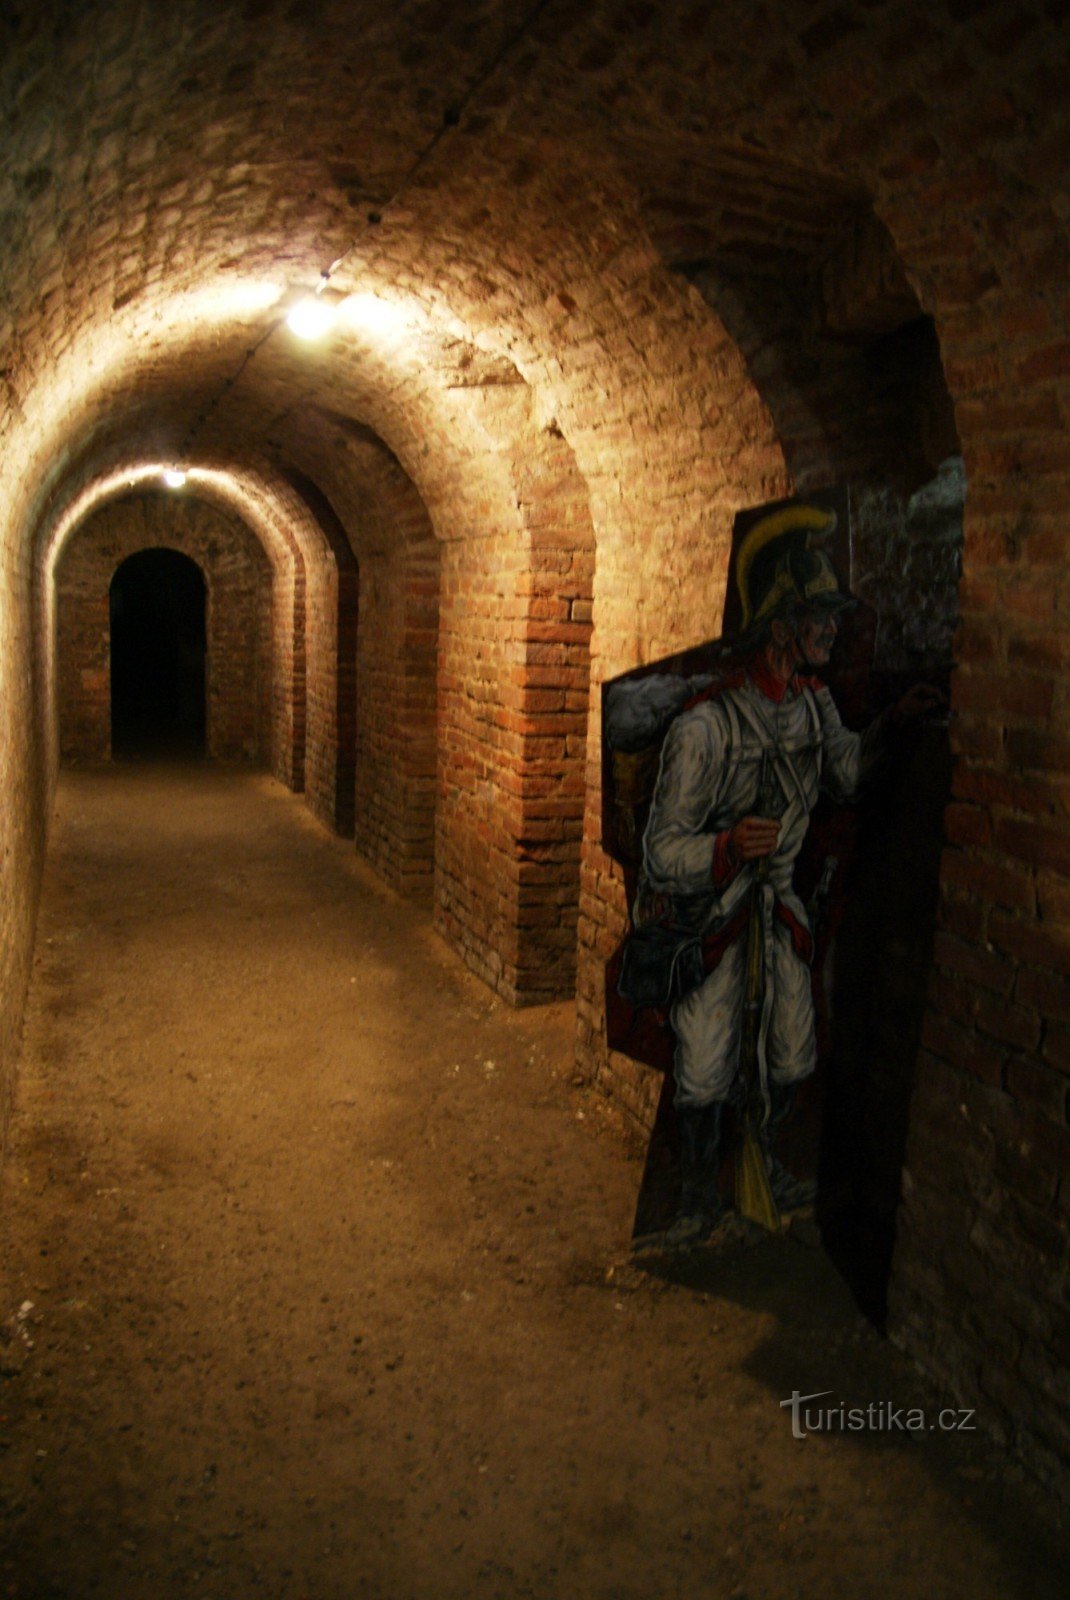 Underground fortress in Josefov